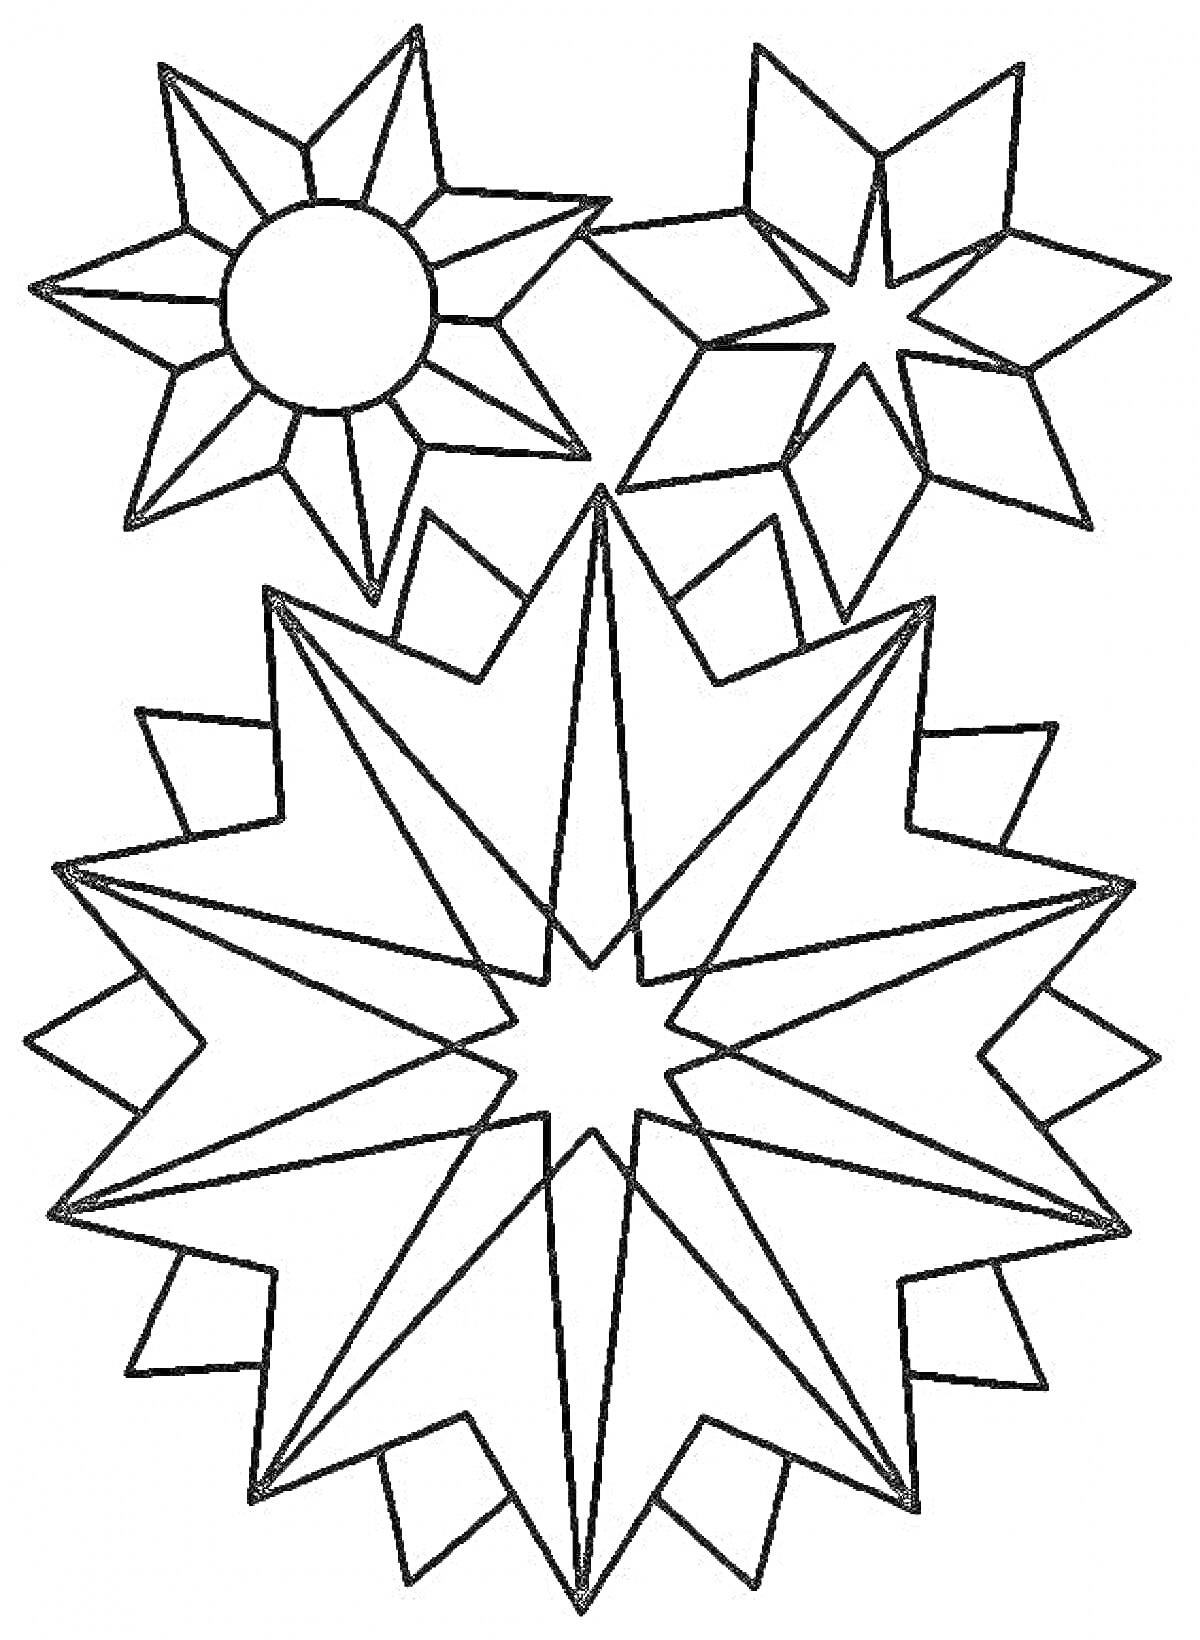 Раскраска Вифлеемская звезда с геометрическими фигурами, включая круг и угловатые элементы.